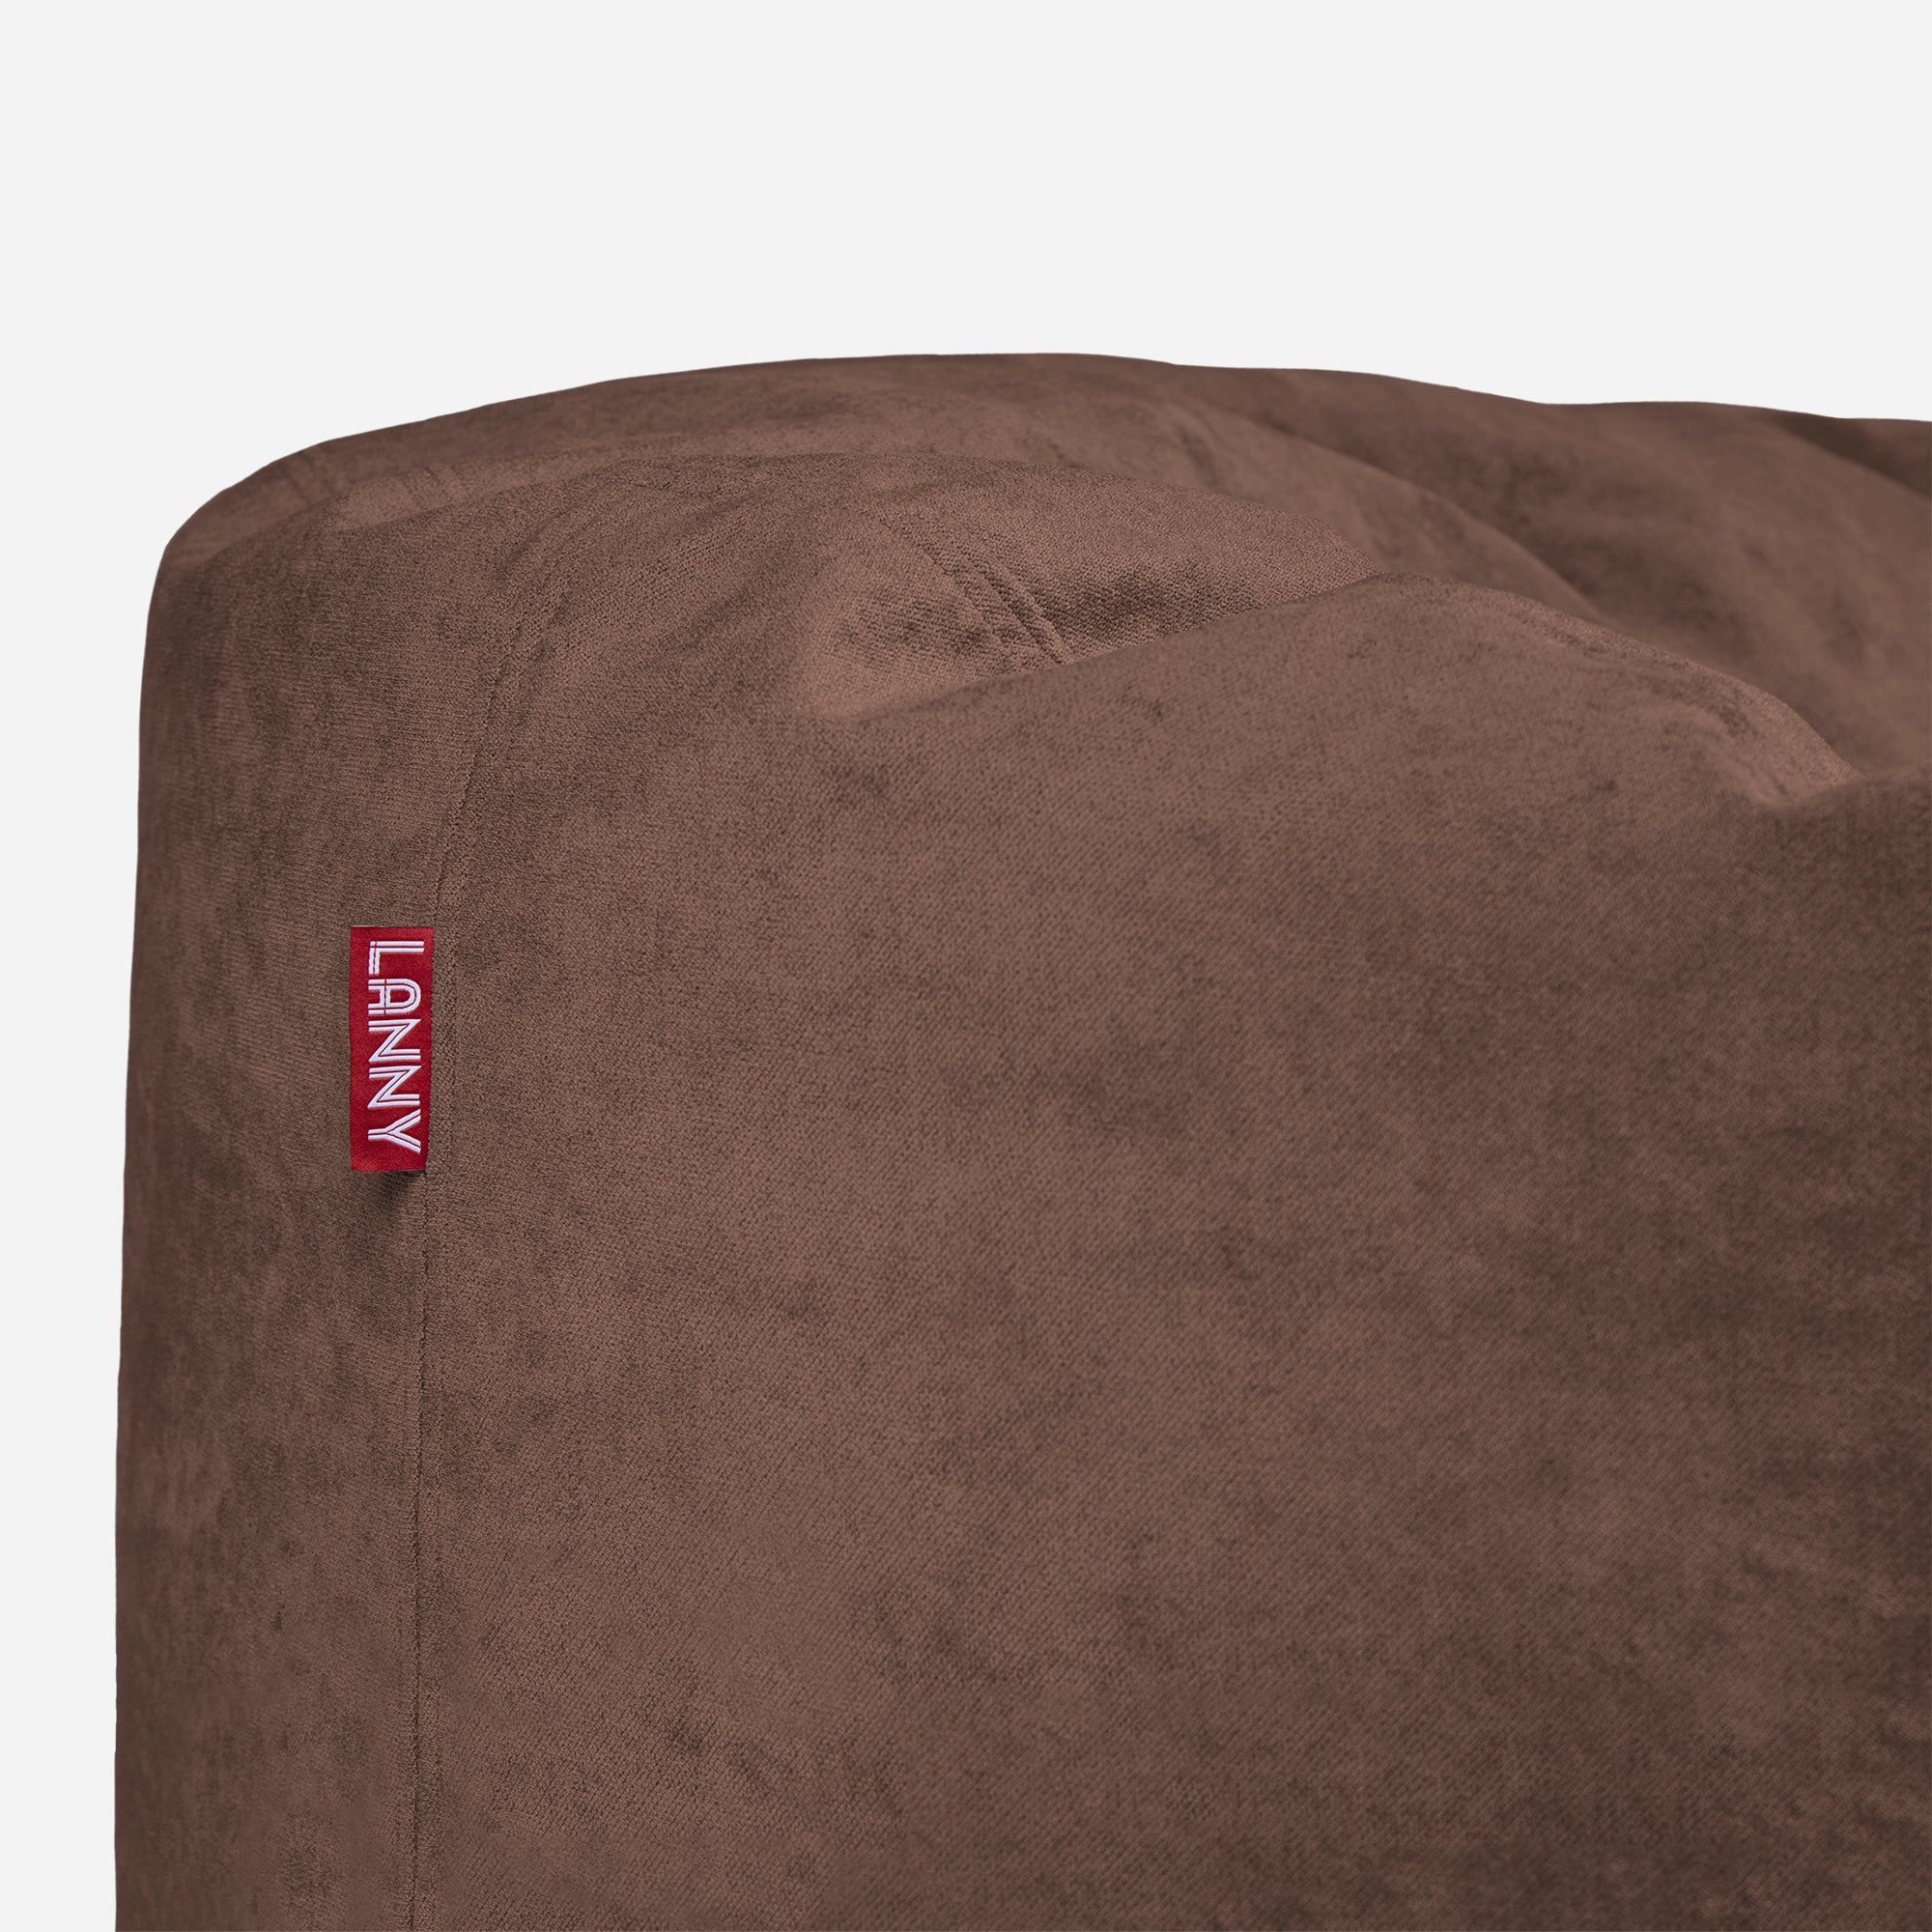 Large Original Aldo Brown Bean Bag